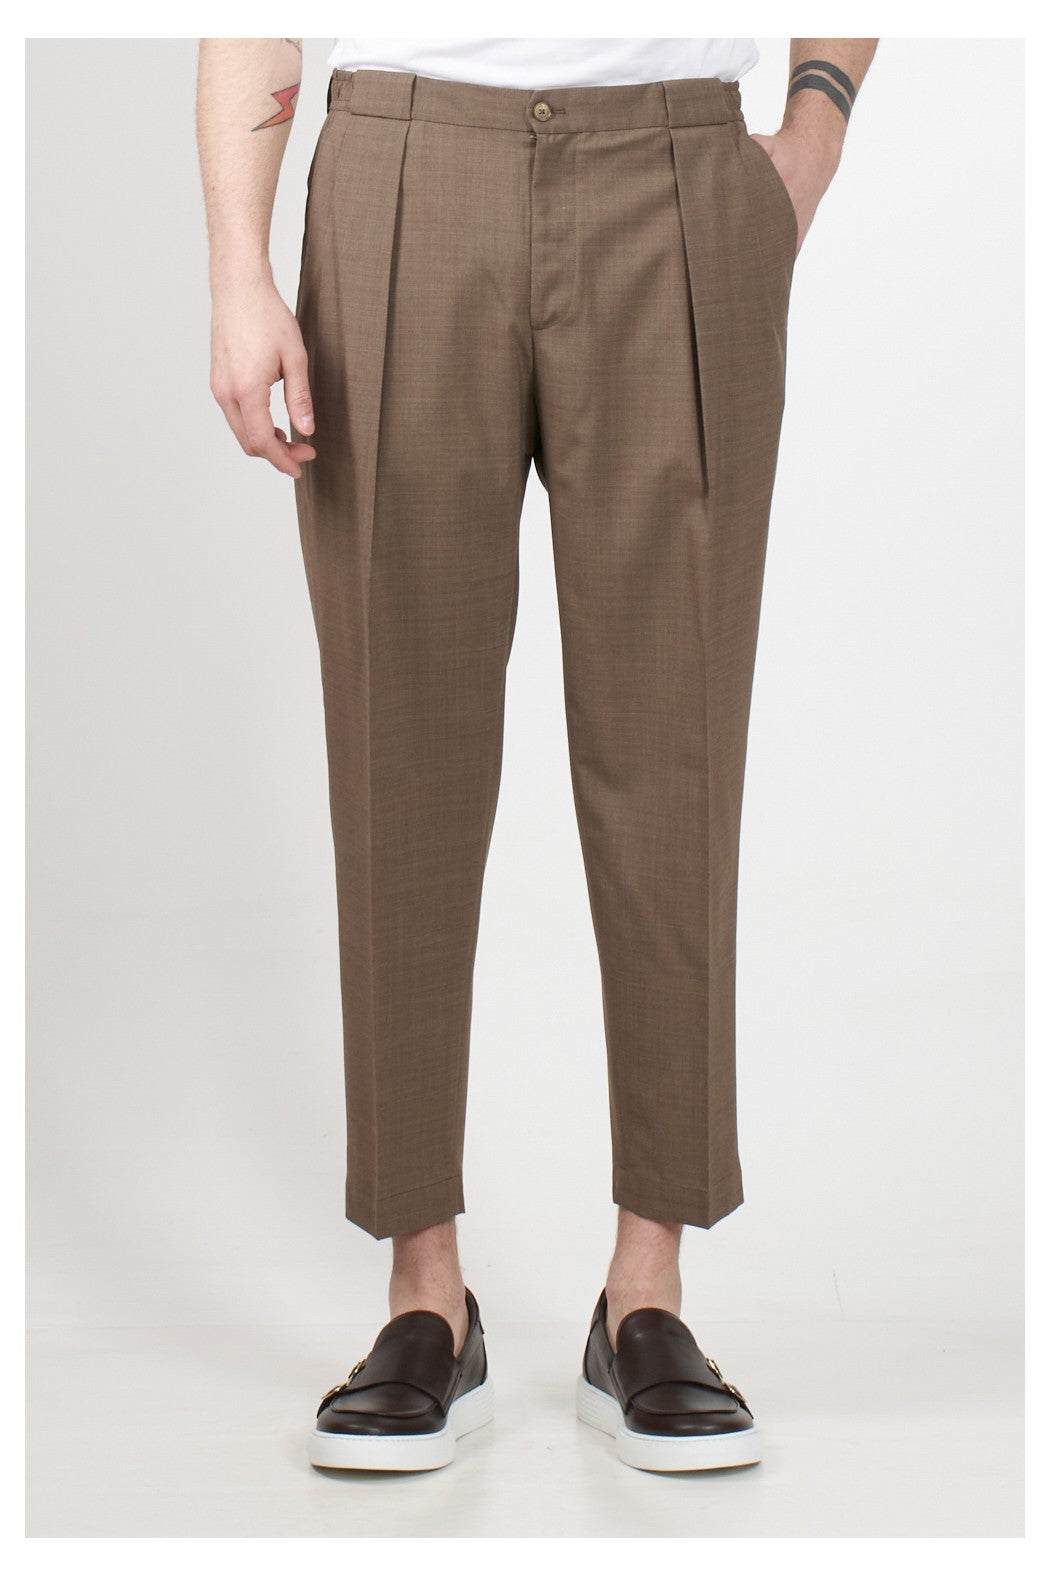 Pantalone Modello Portobello / Beige - Ideal Moda